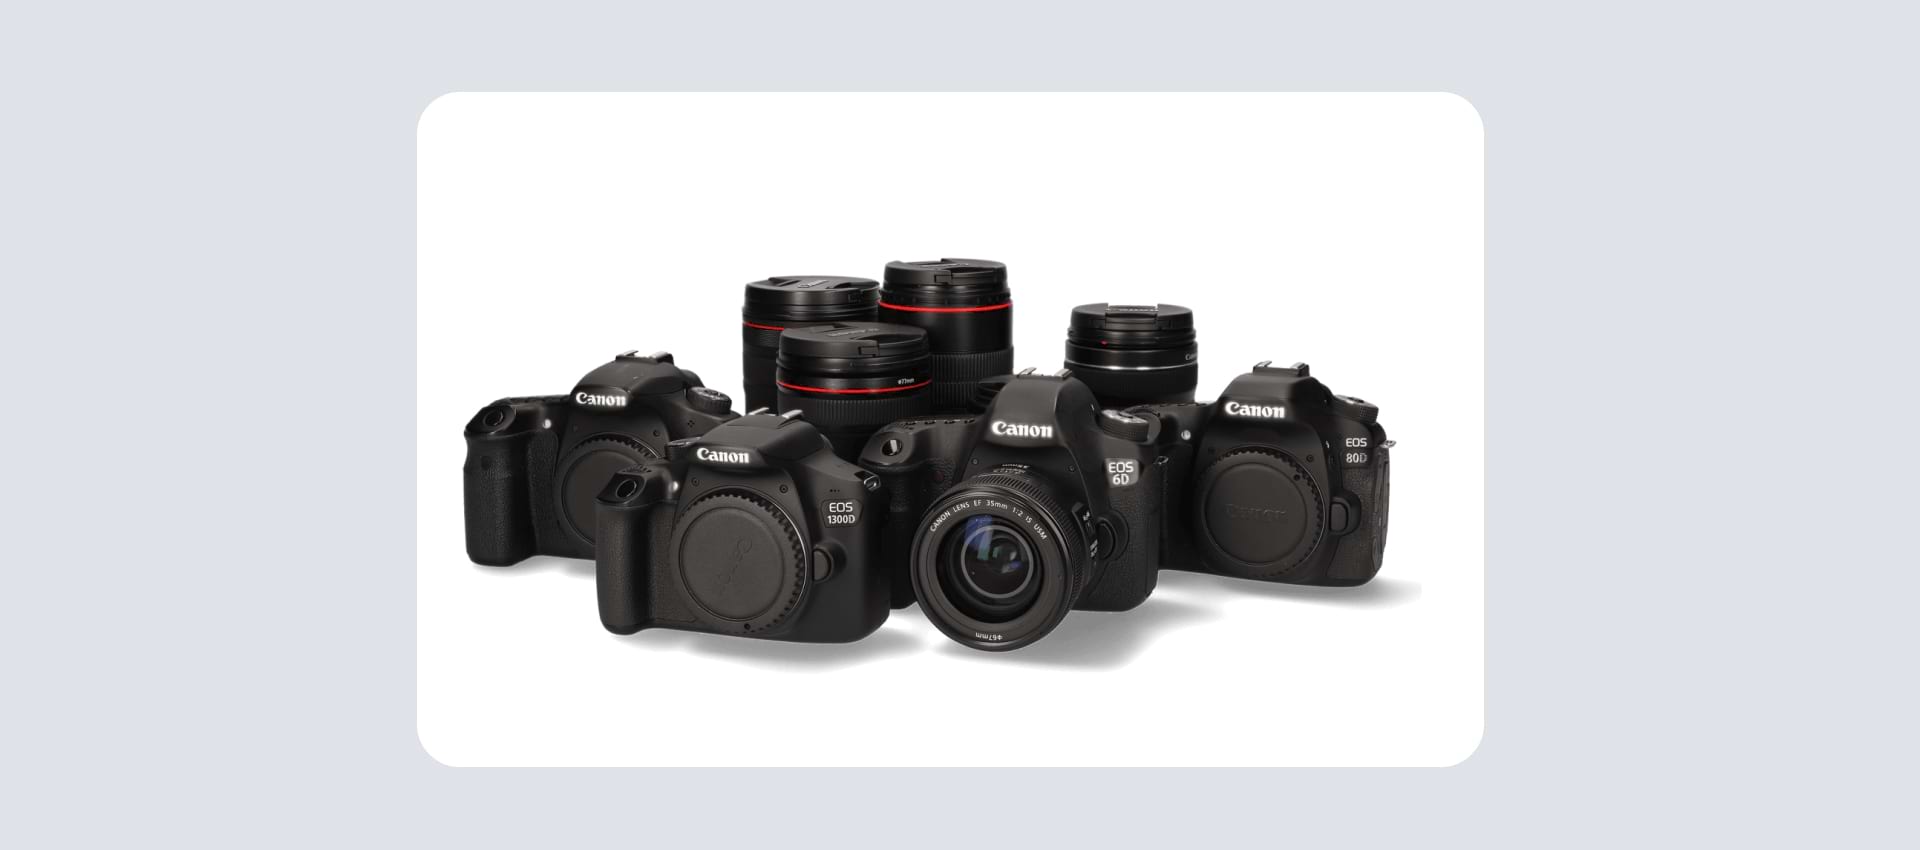 A photo of Canon cameras 